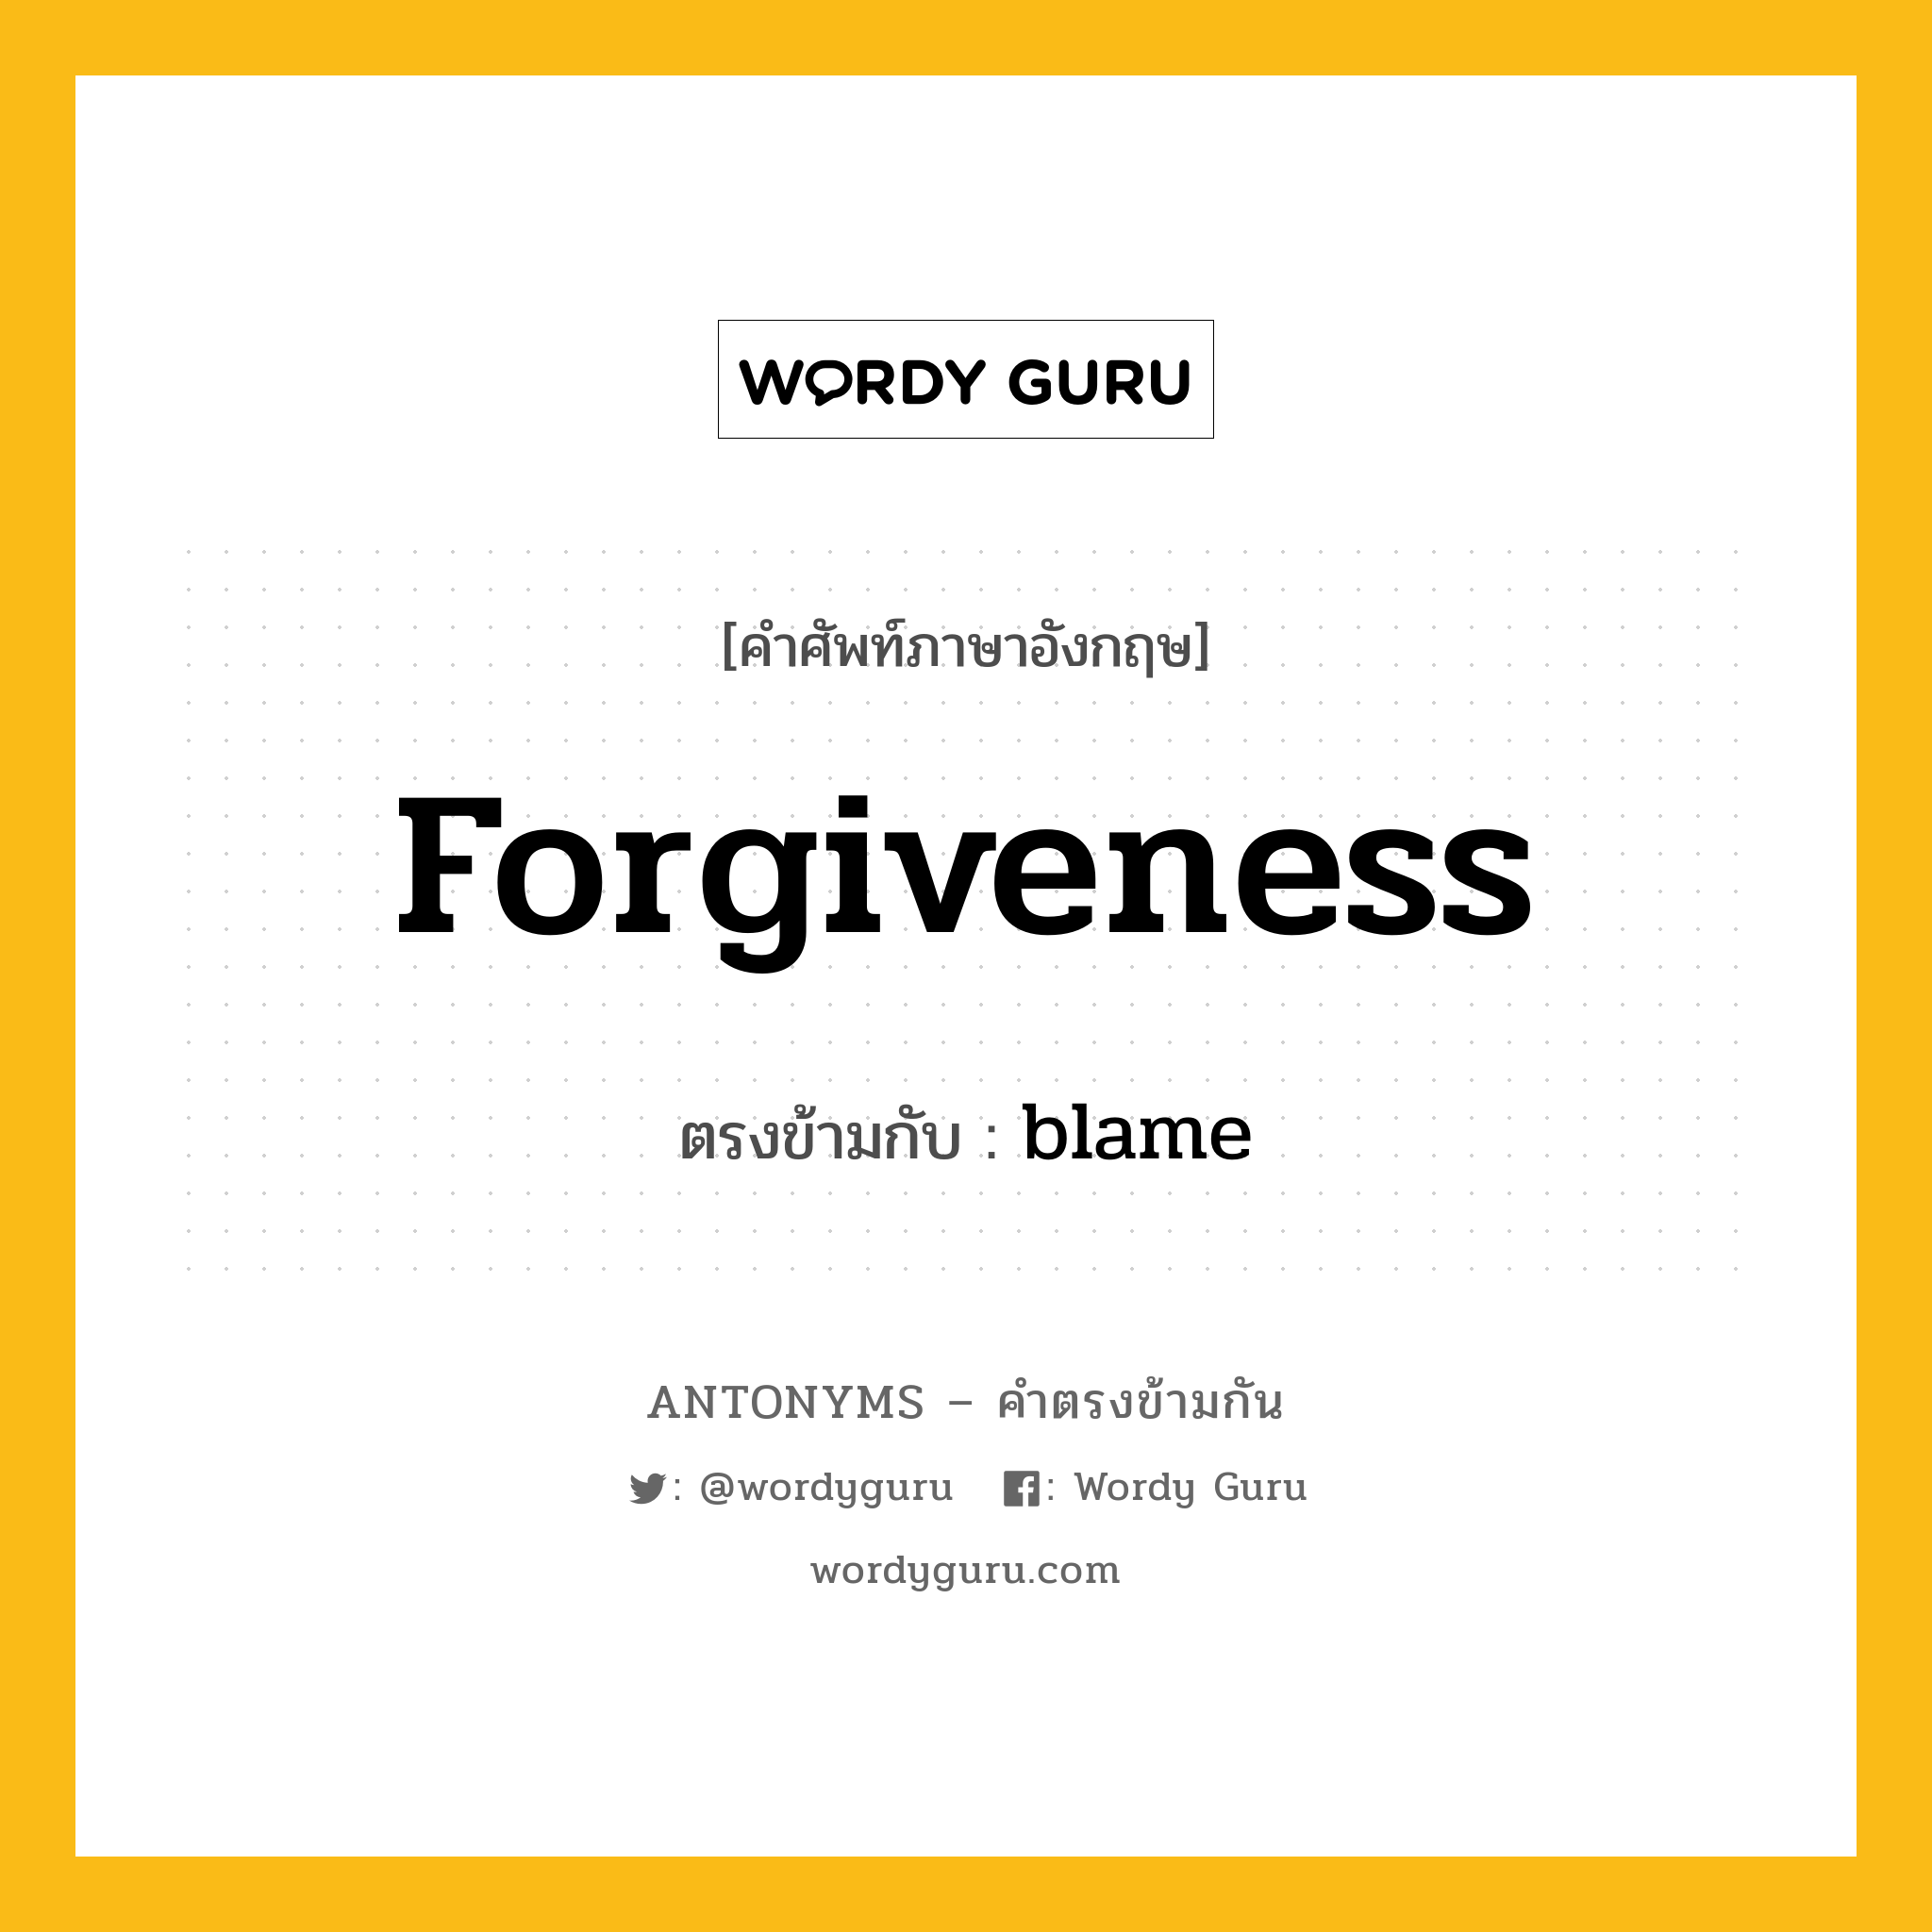 forgiveness เป็นคำตรงข้ามกับคำไหนบ้าง?, คำศัพท์ภาษาอังกฤษ forgiveness ตรงข้ามกับ blame หมวด blame